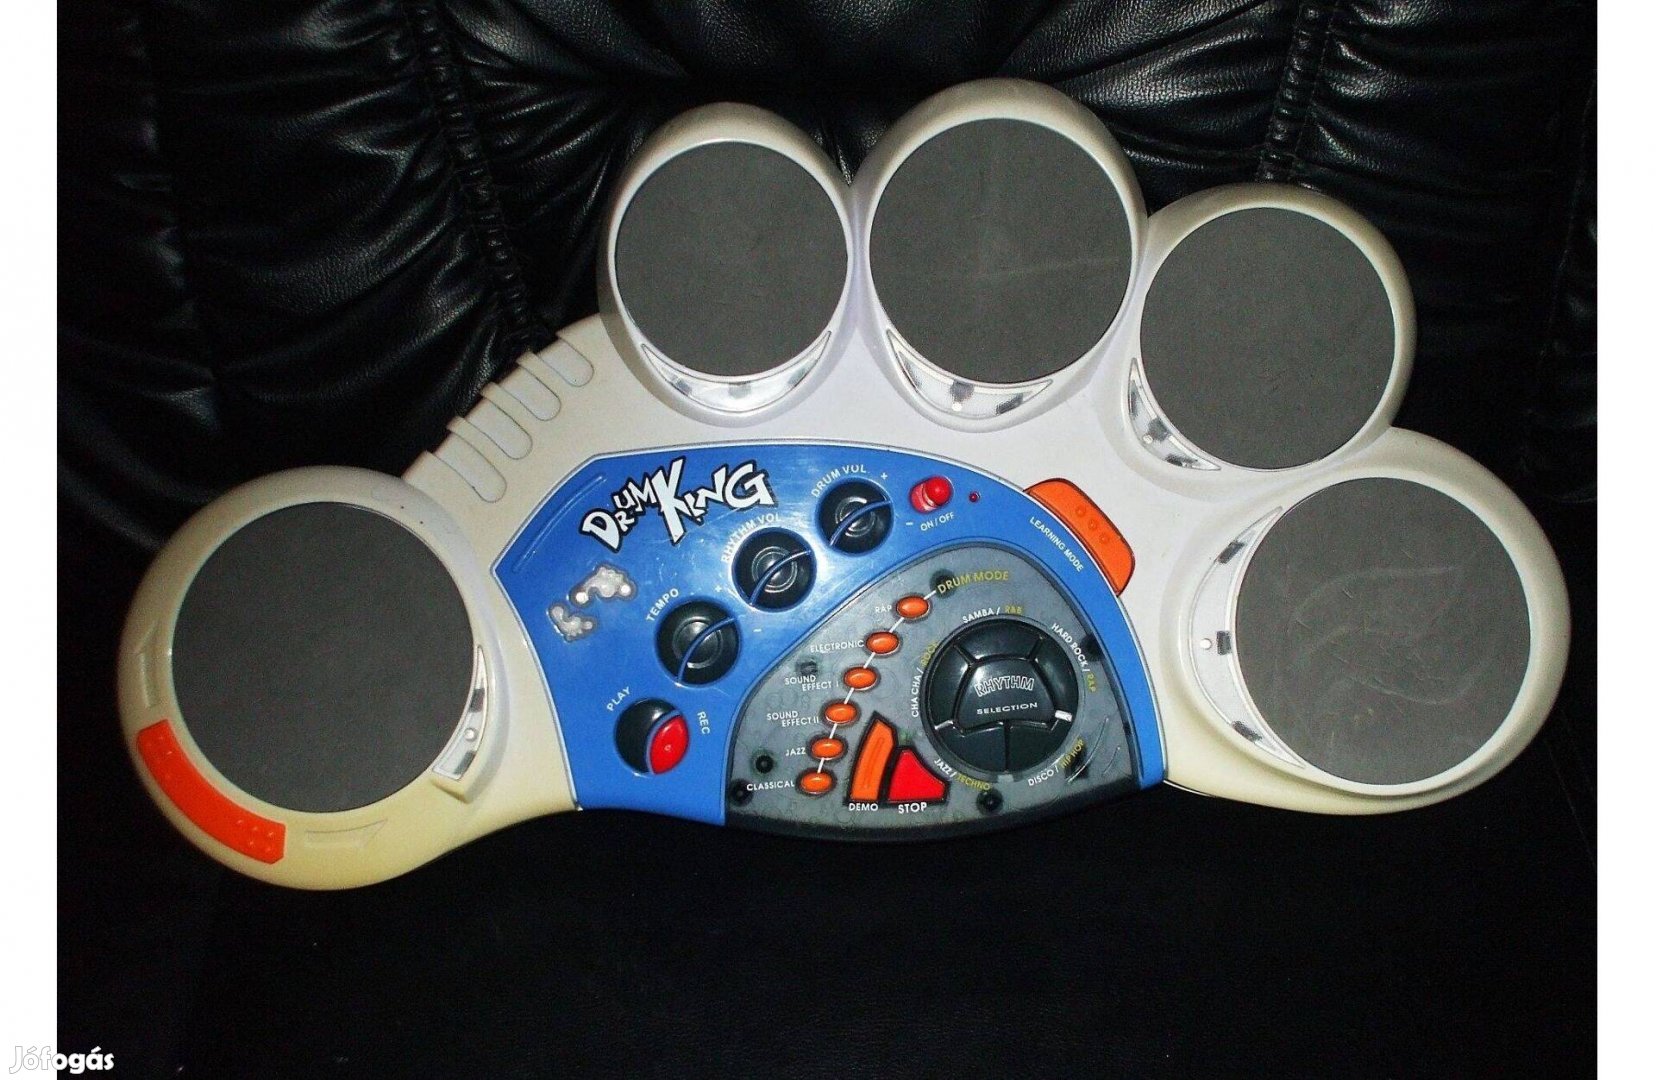 Minőségi Láb formájú "Drum King" játék láb, ugráló dobgép